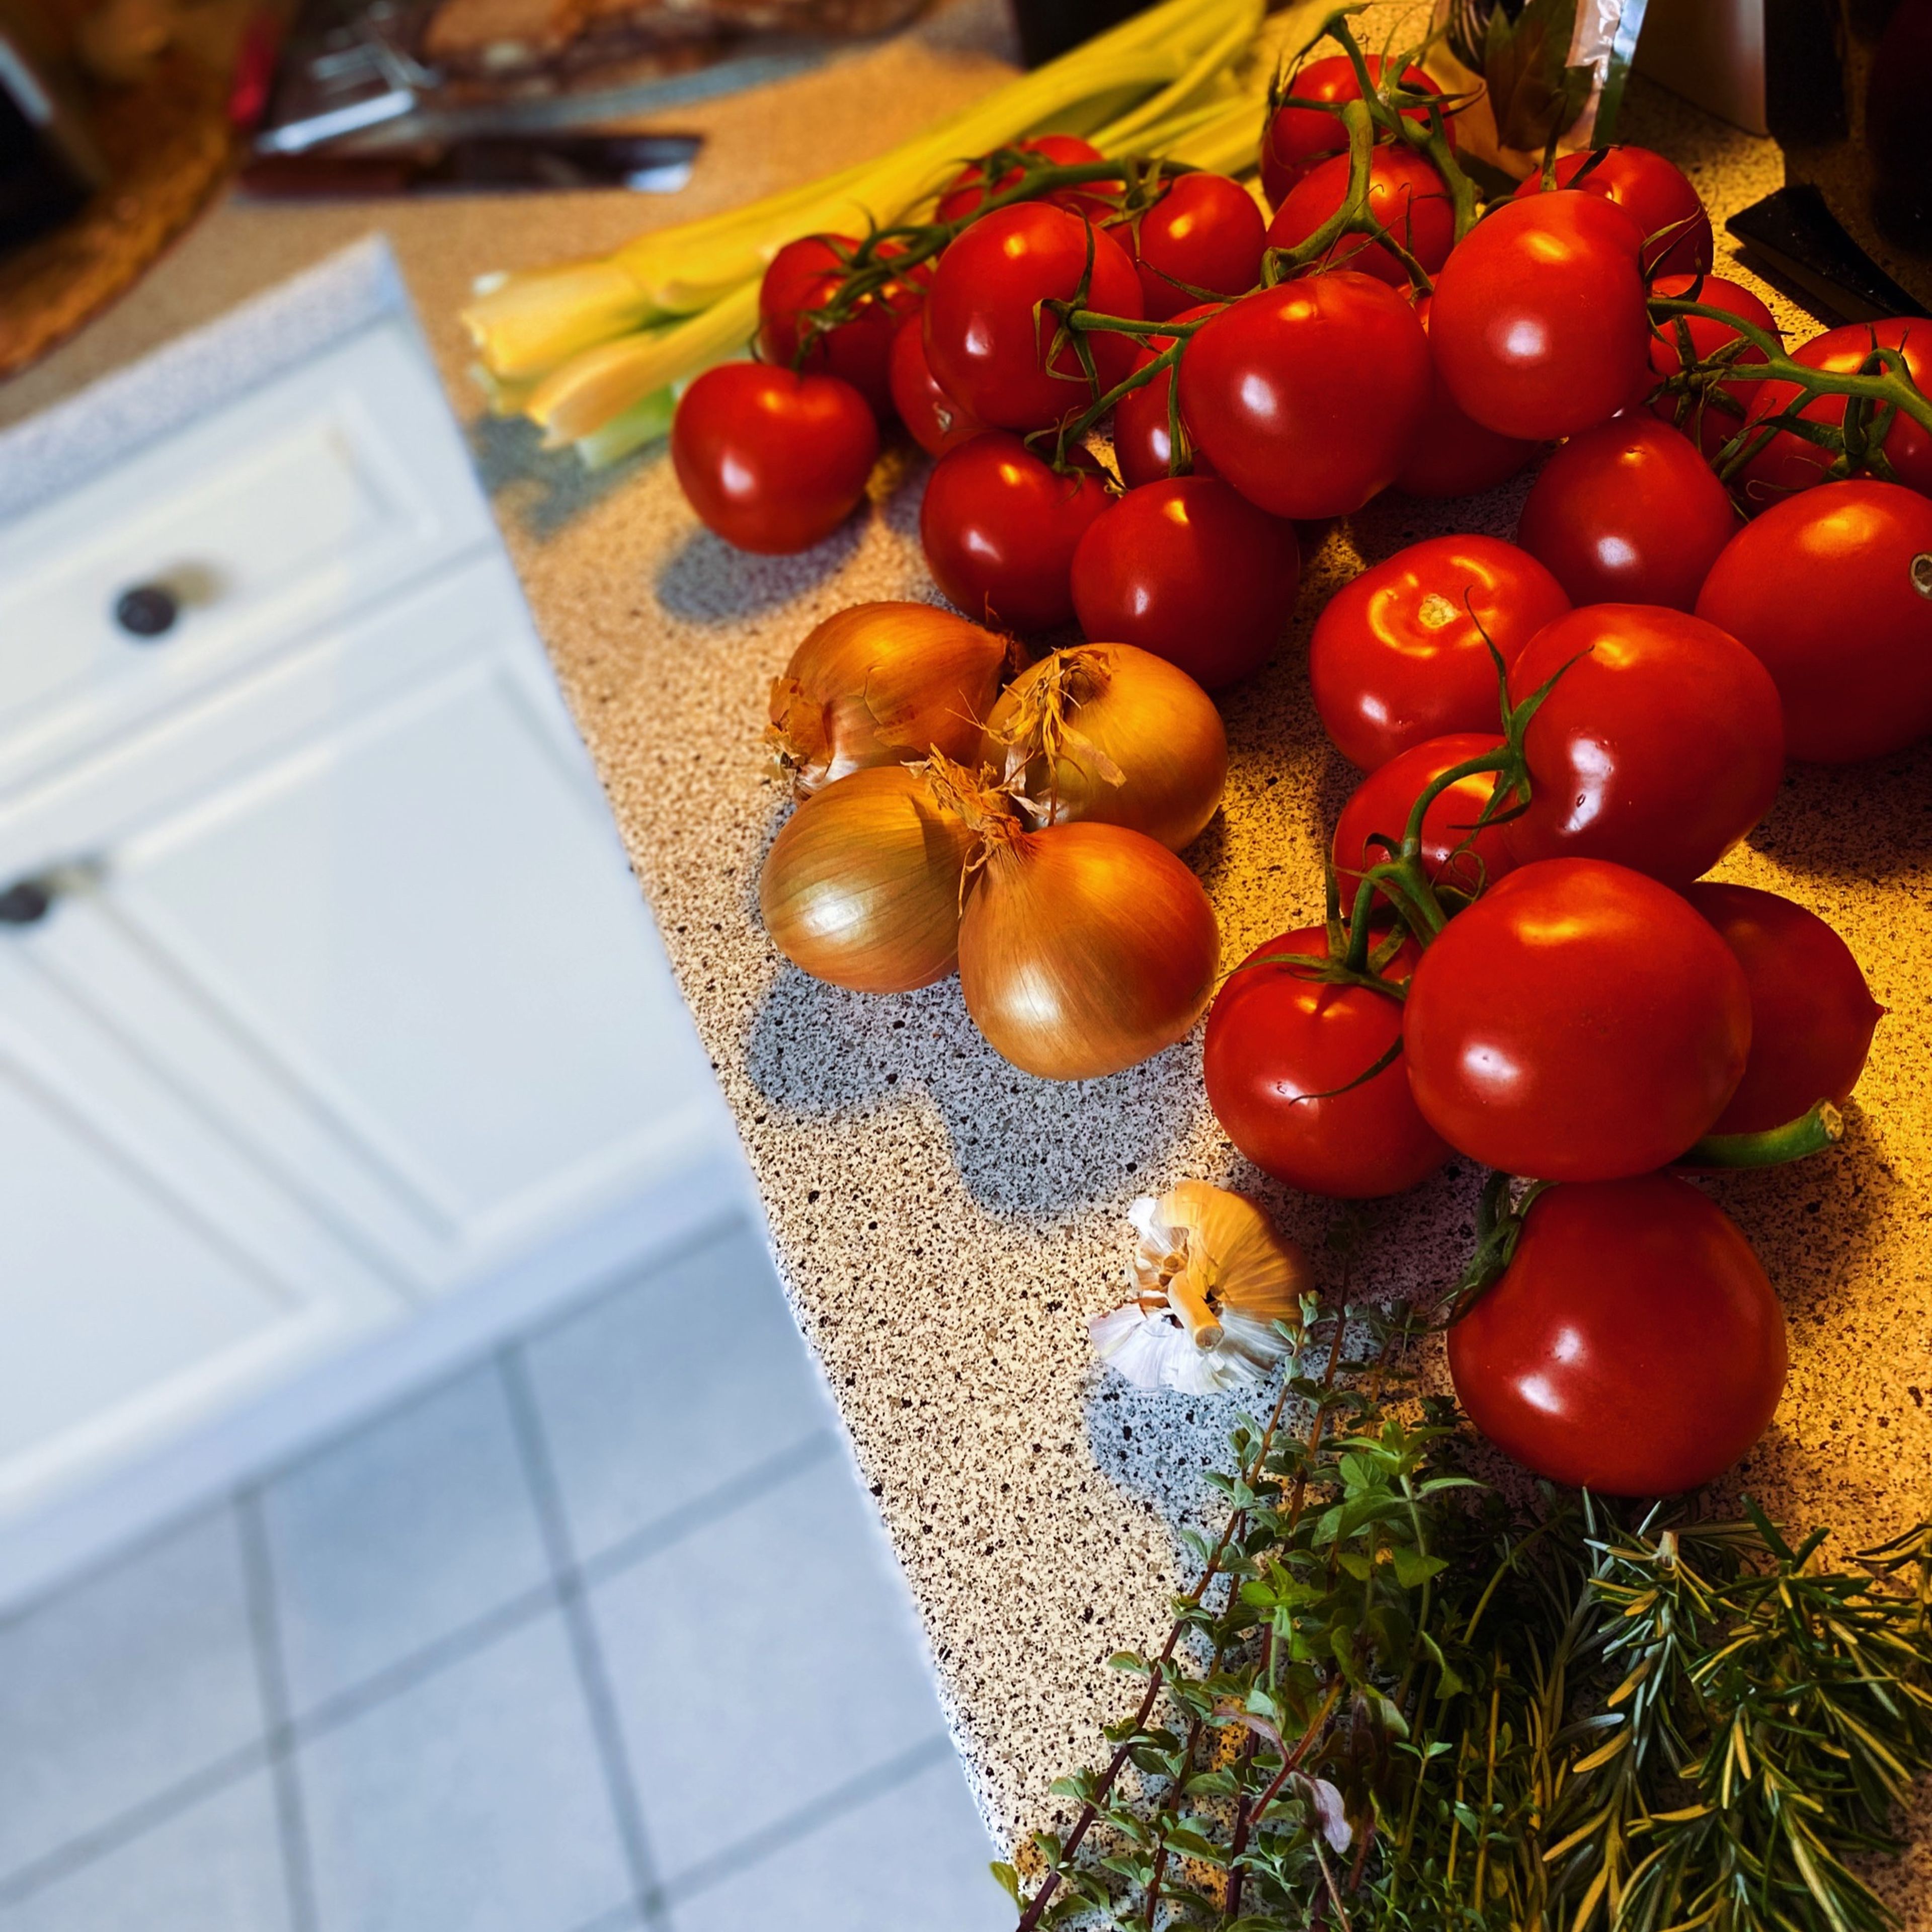 Die Tomaten waschen, Stielansatz entfernen und grob würfeln. Zwiebeln und Knoblauch fein hacken. Sellerie und Pilze waschen, danach fein würfeln. Kräuter waschen, trocknen und hacken.